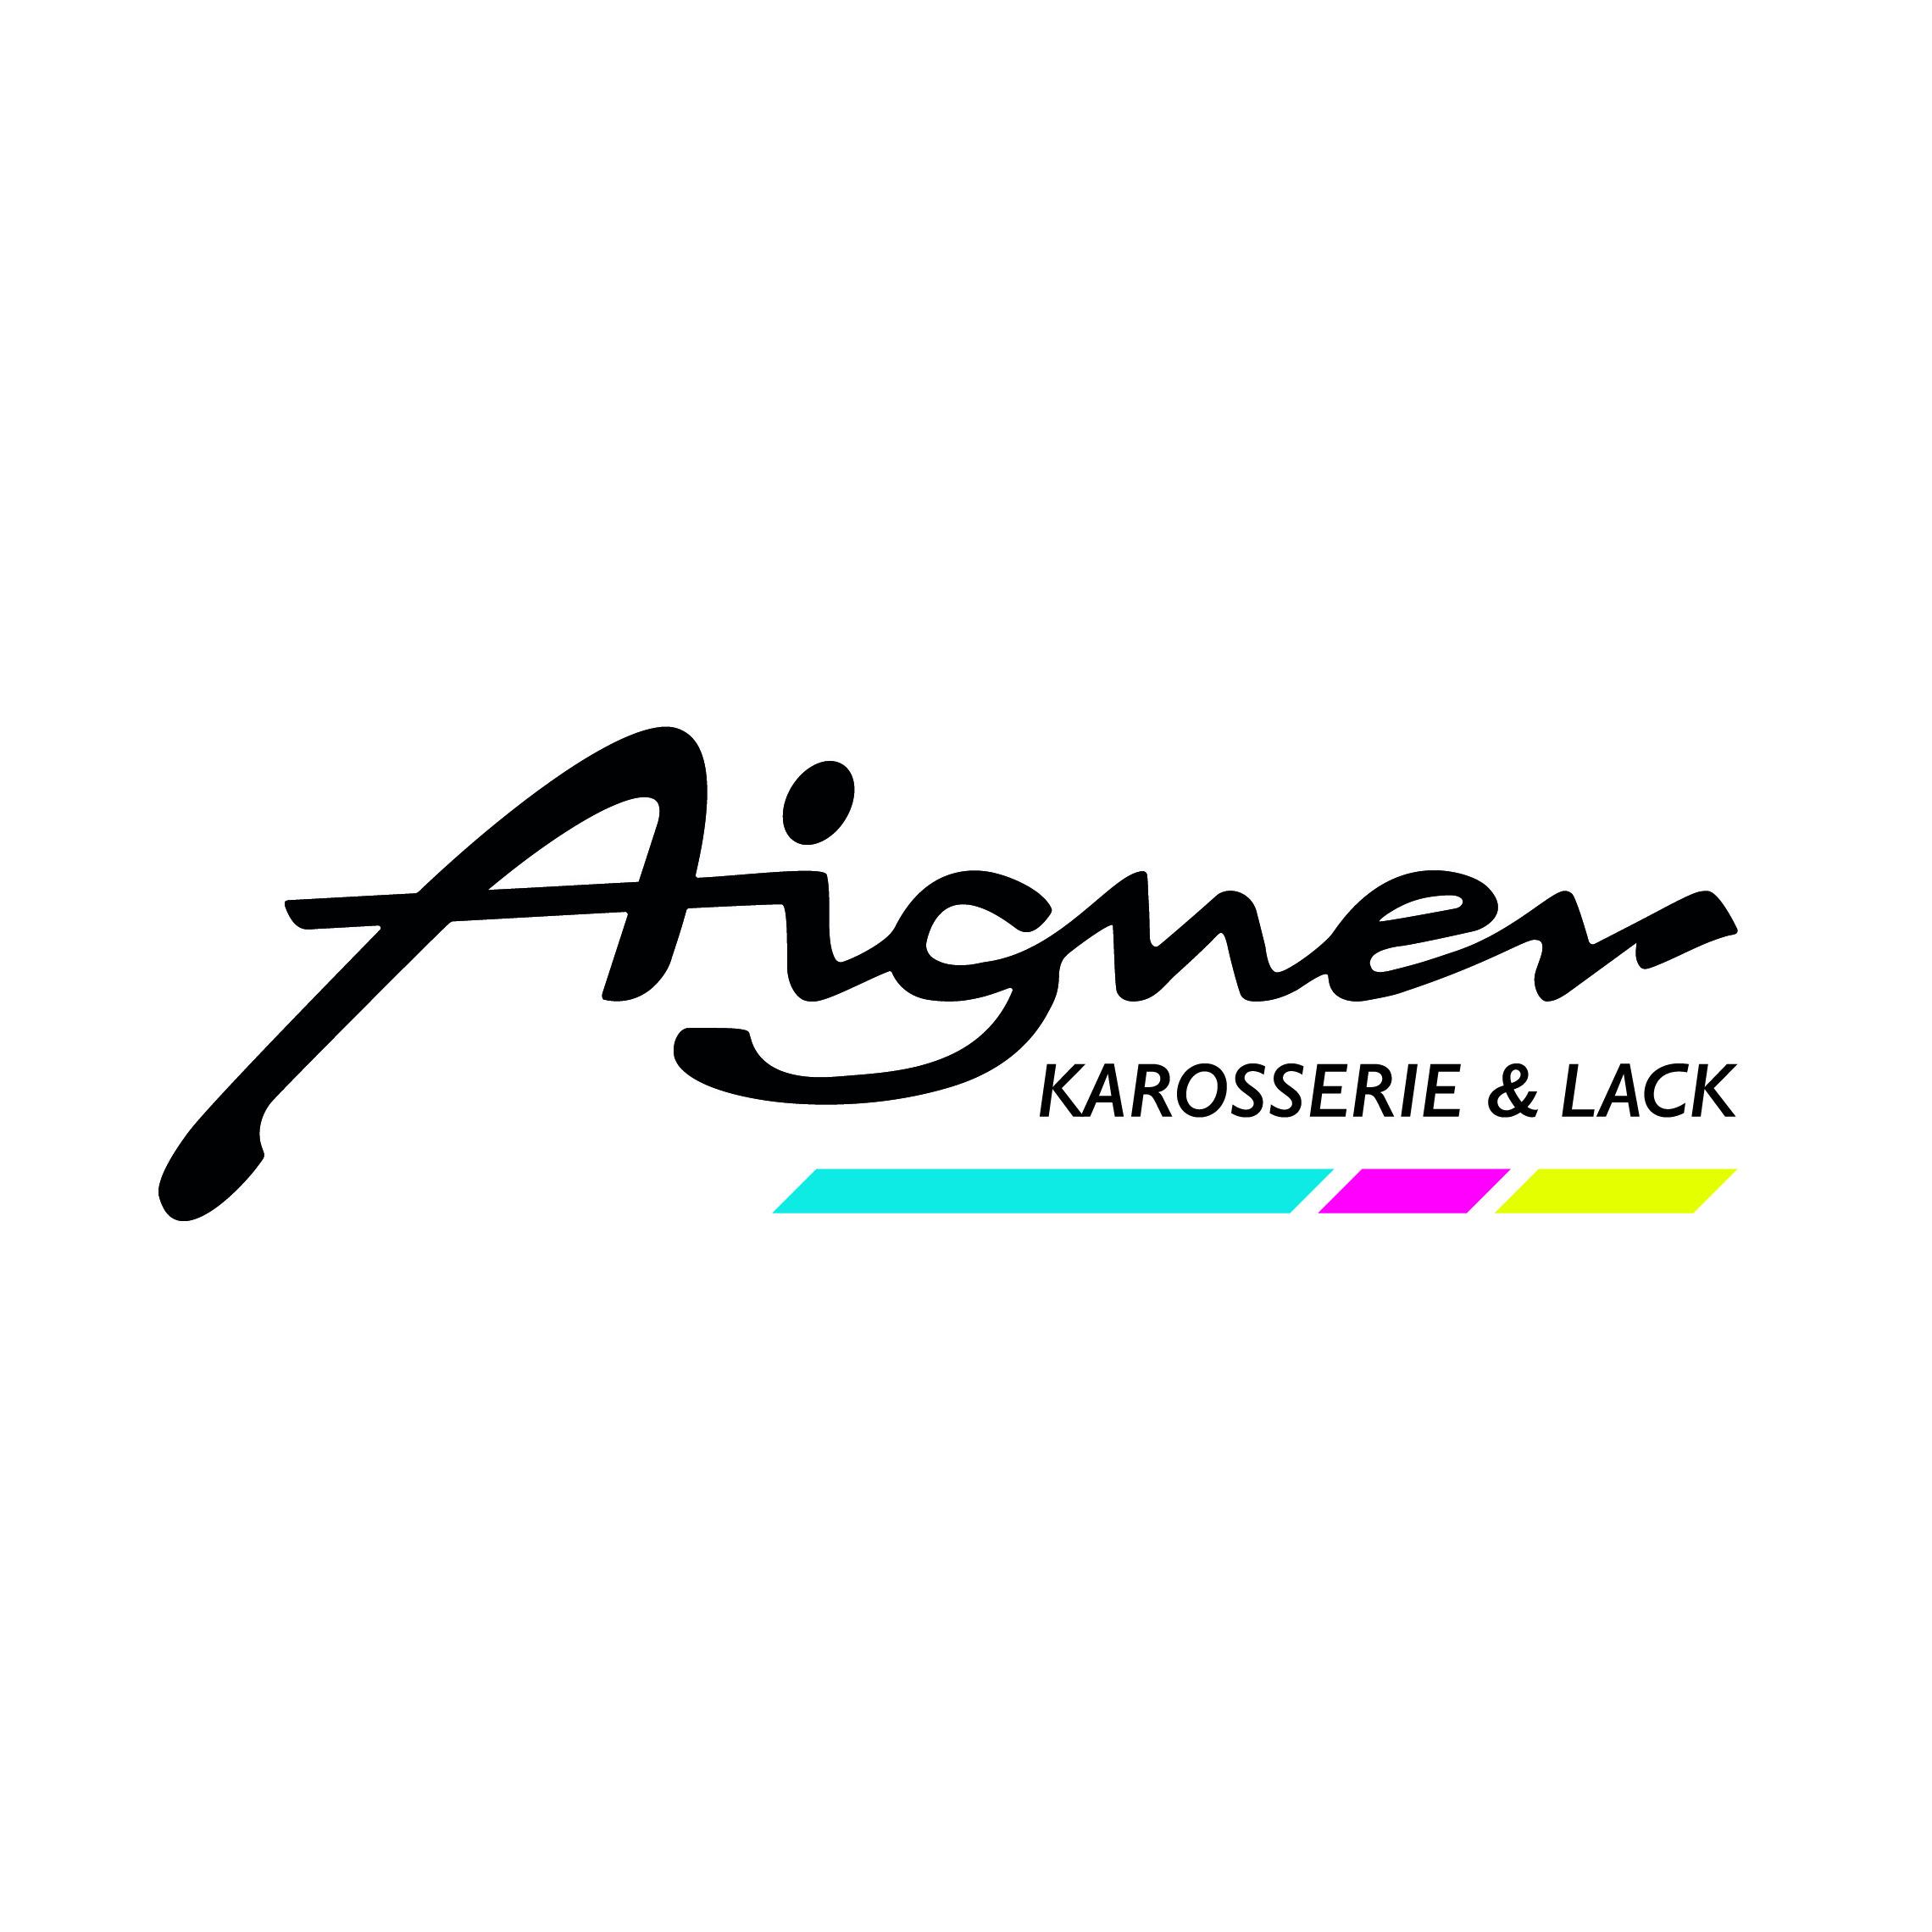 AIGNER - Karosserie & Lack GmbH - Auto Repair Shop - Innsbruck - 0512 3441350 Austria | ShowMeLocal.com